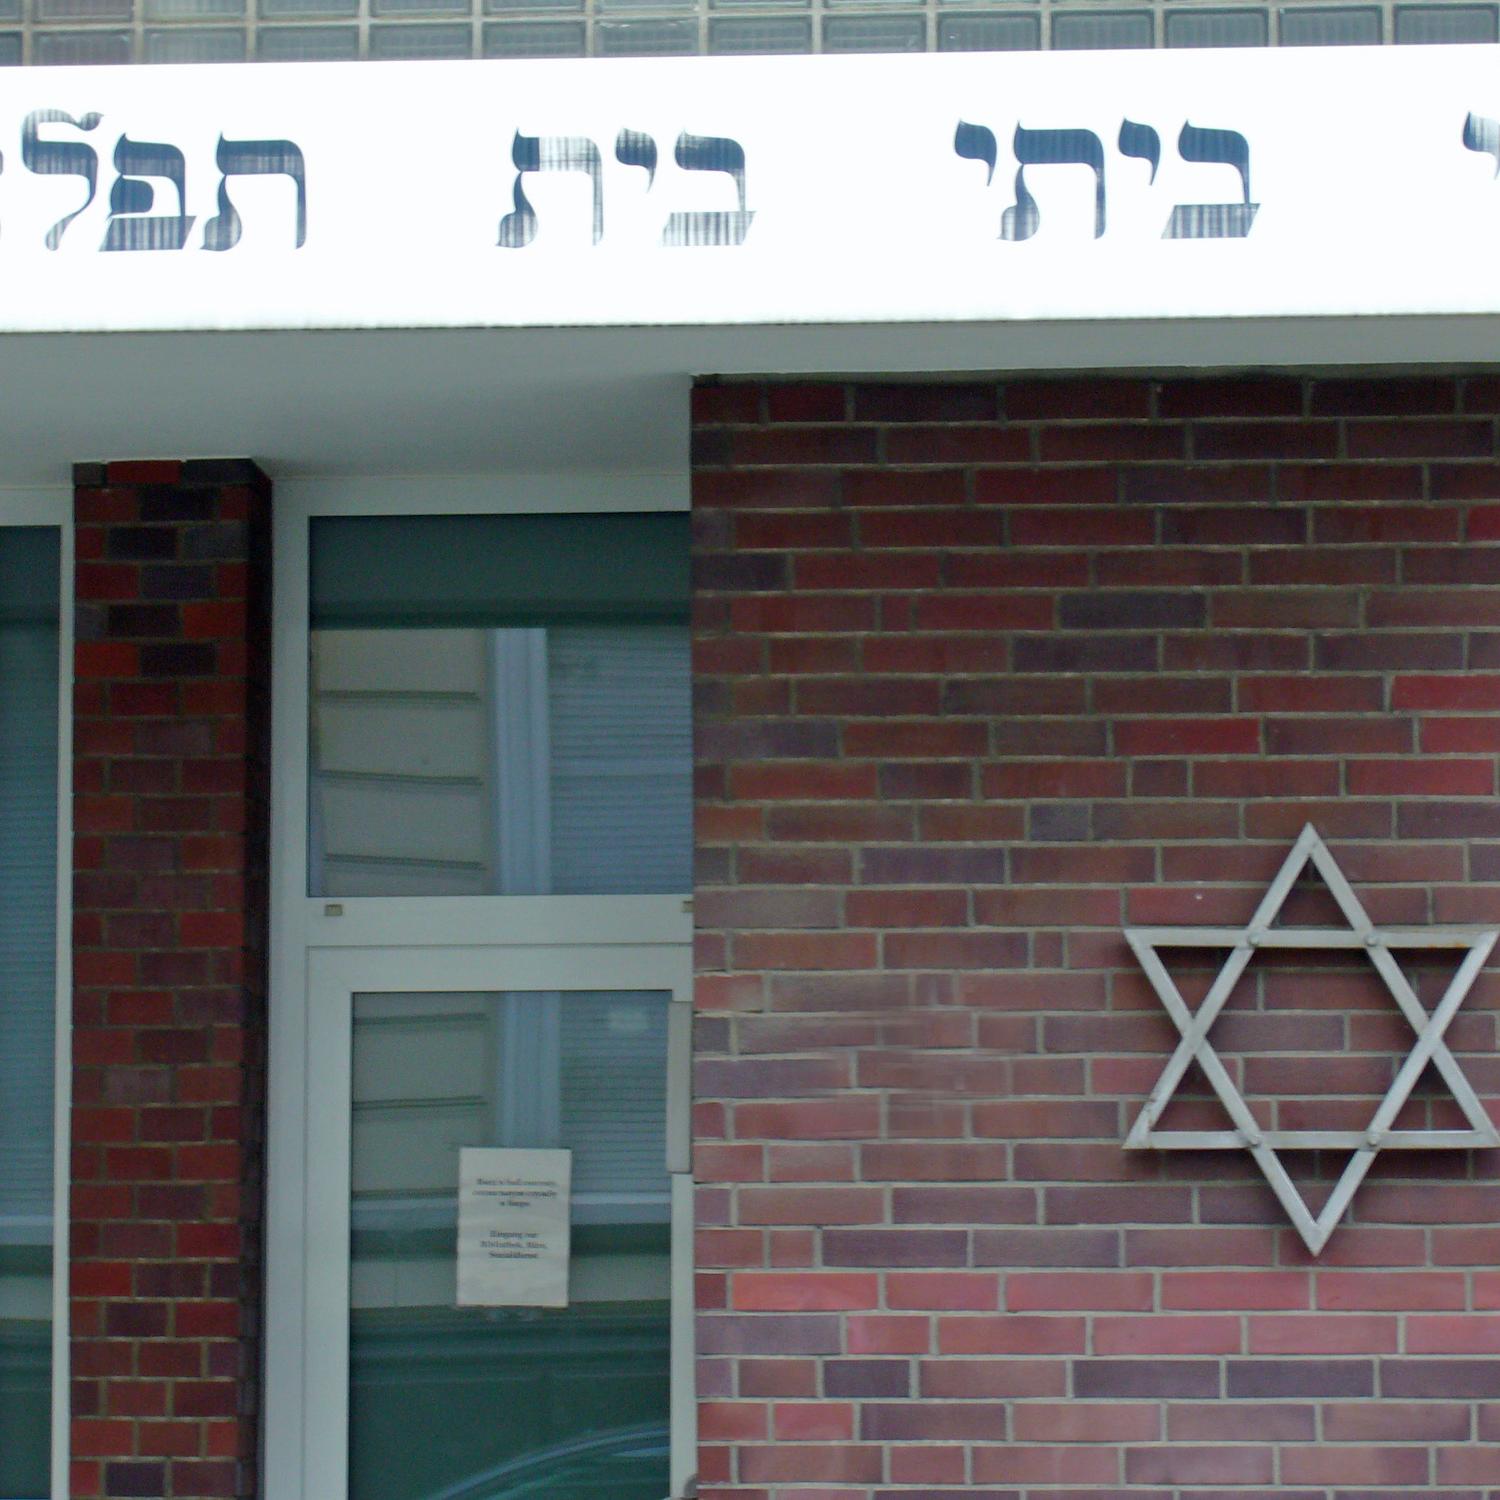 Der Davidstern an der Fassade der Synagoge in Mönchengladbach.